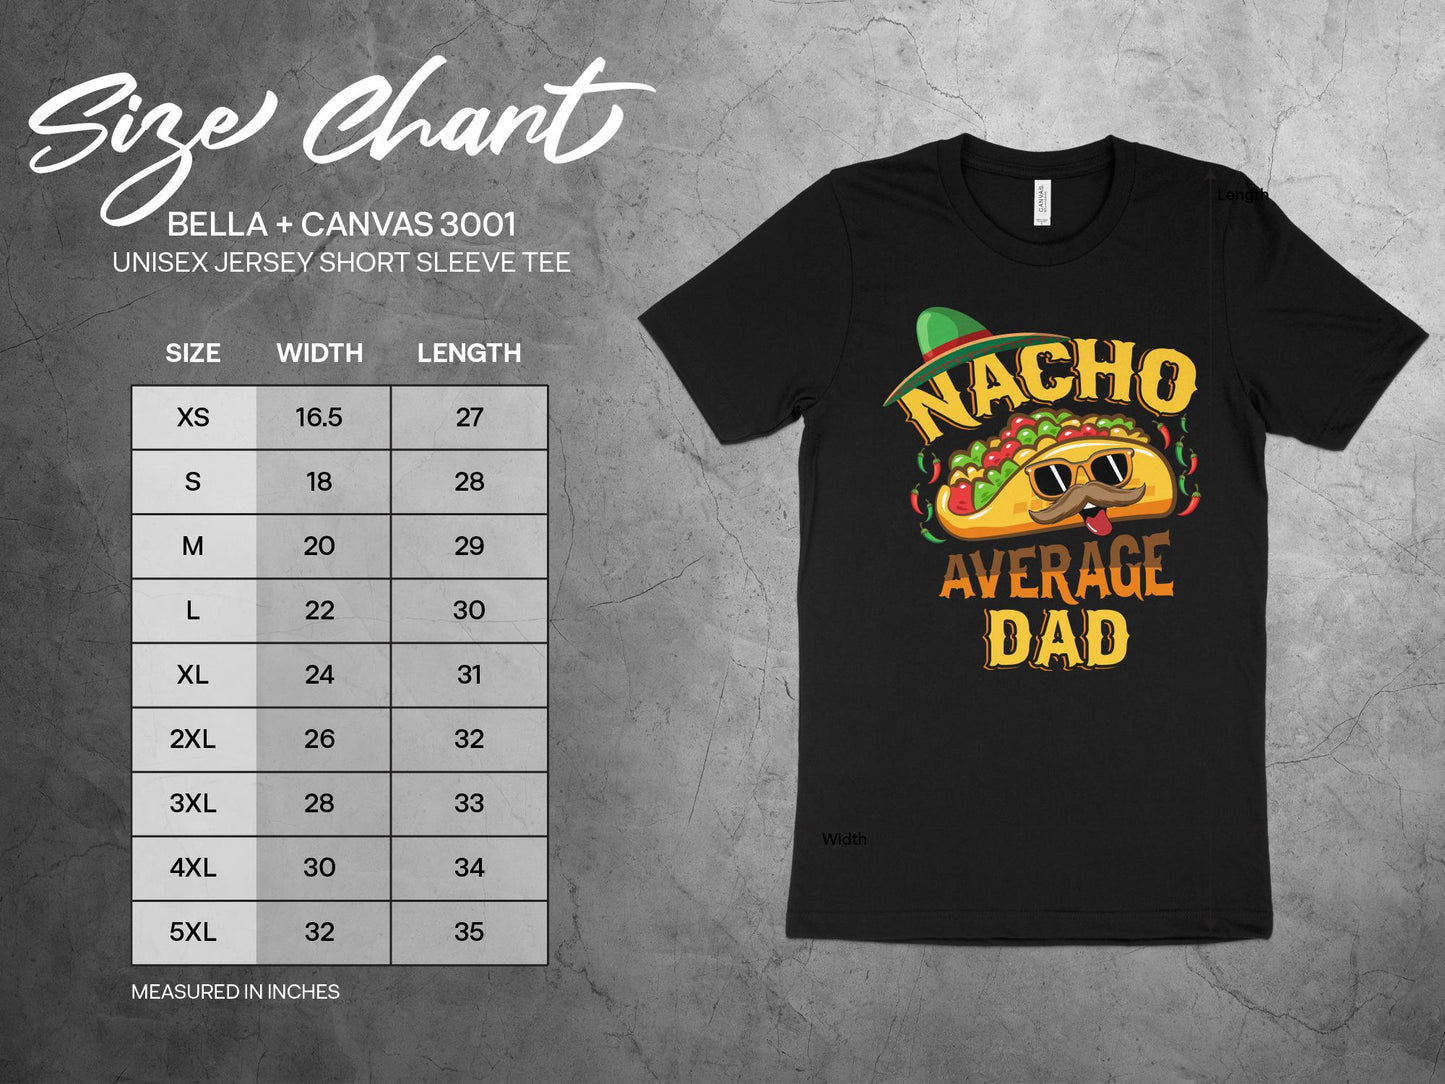 Nacho Average Dad Shirt, sizing chart